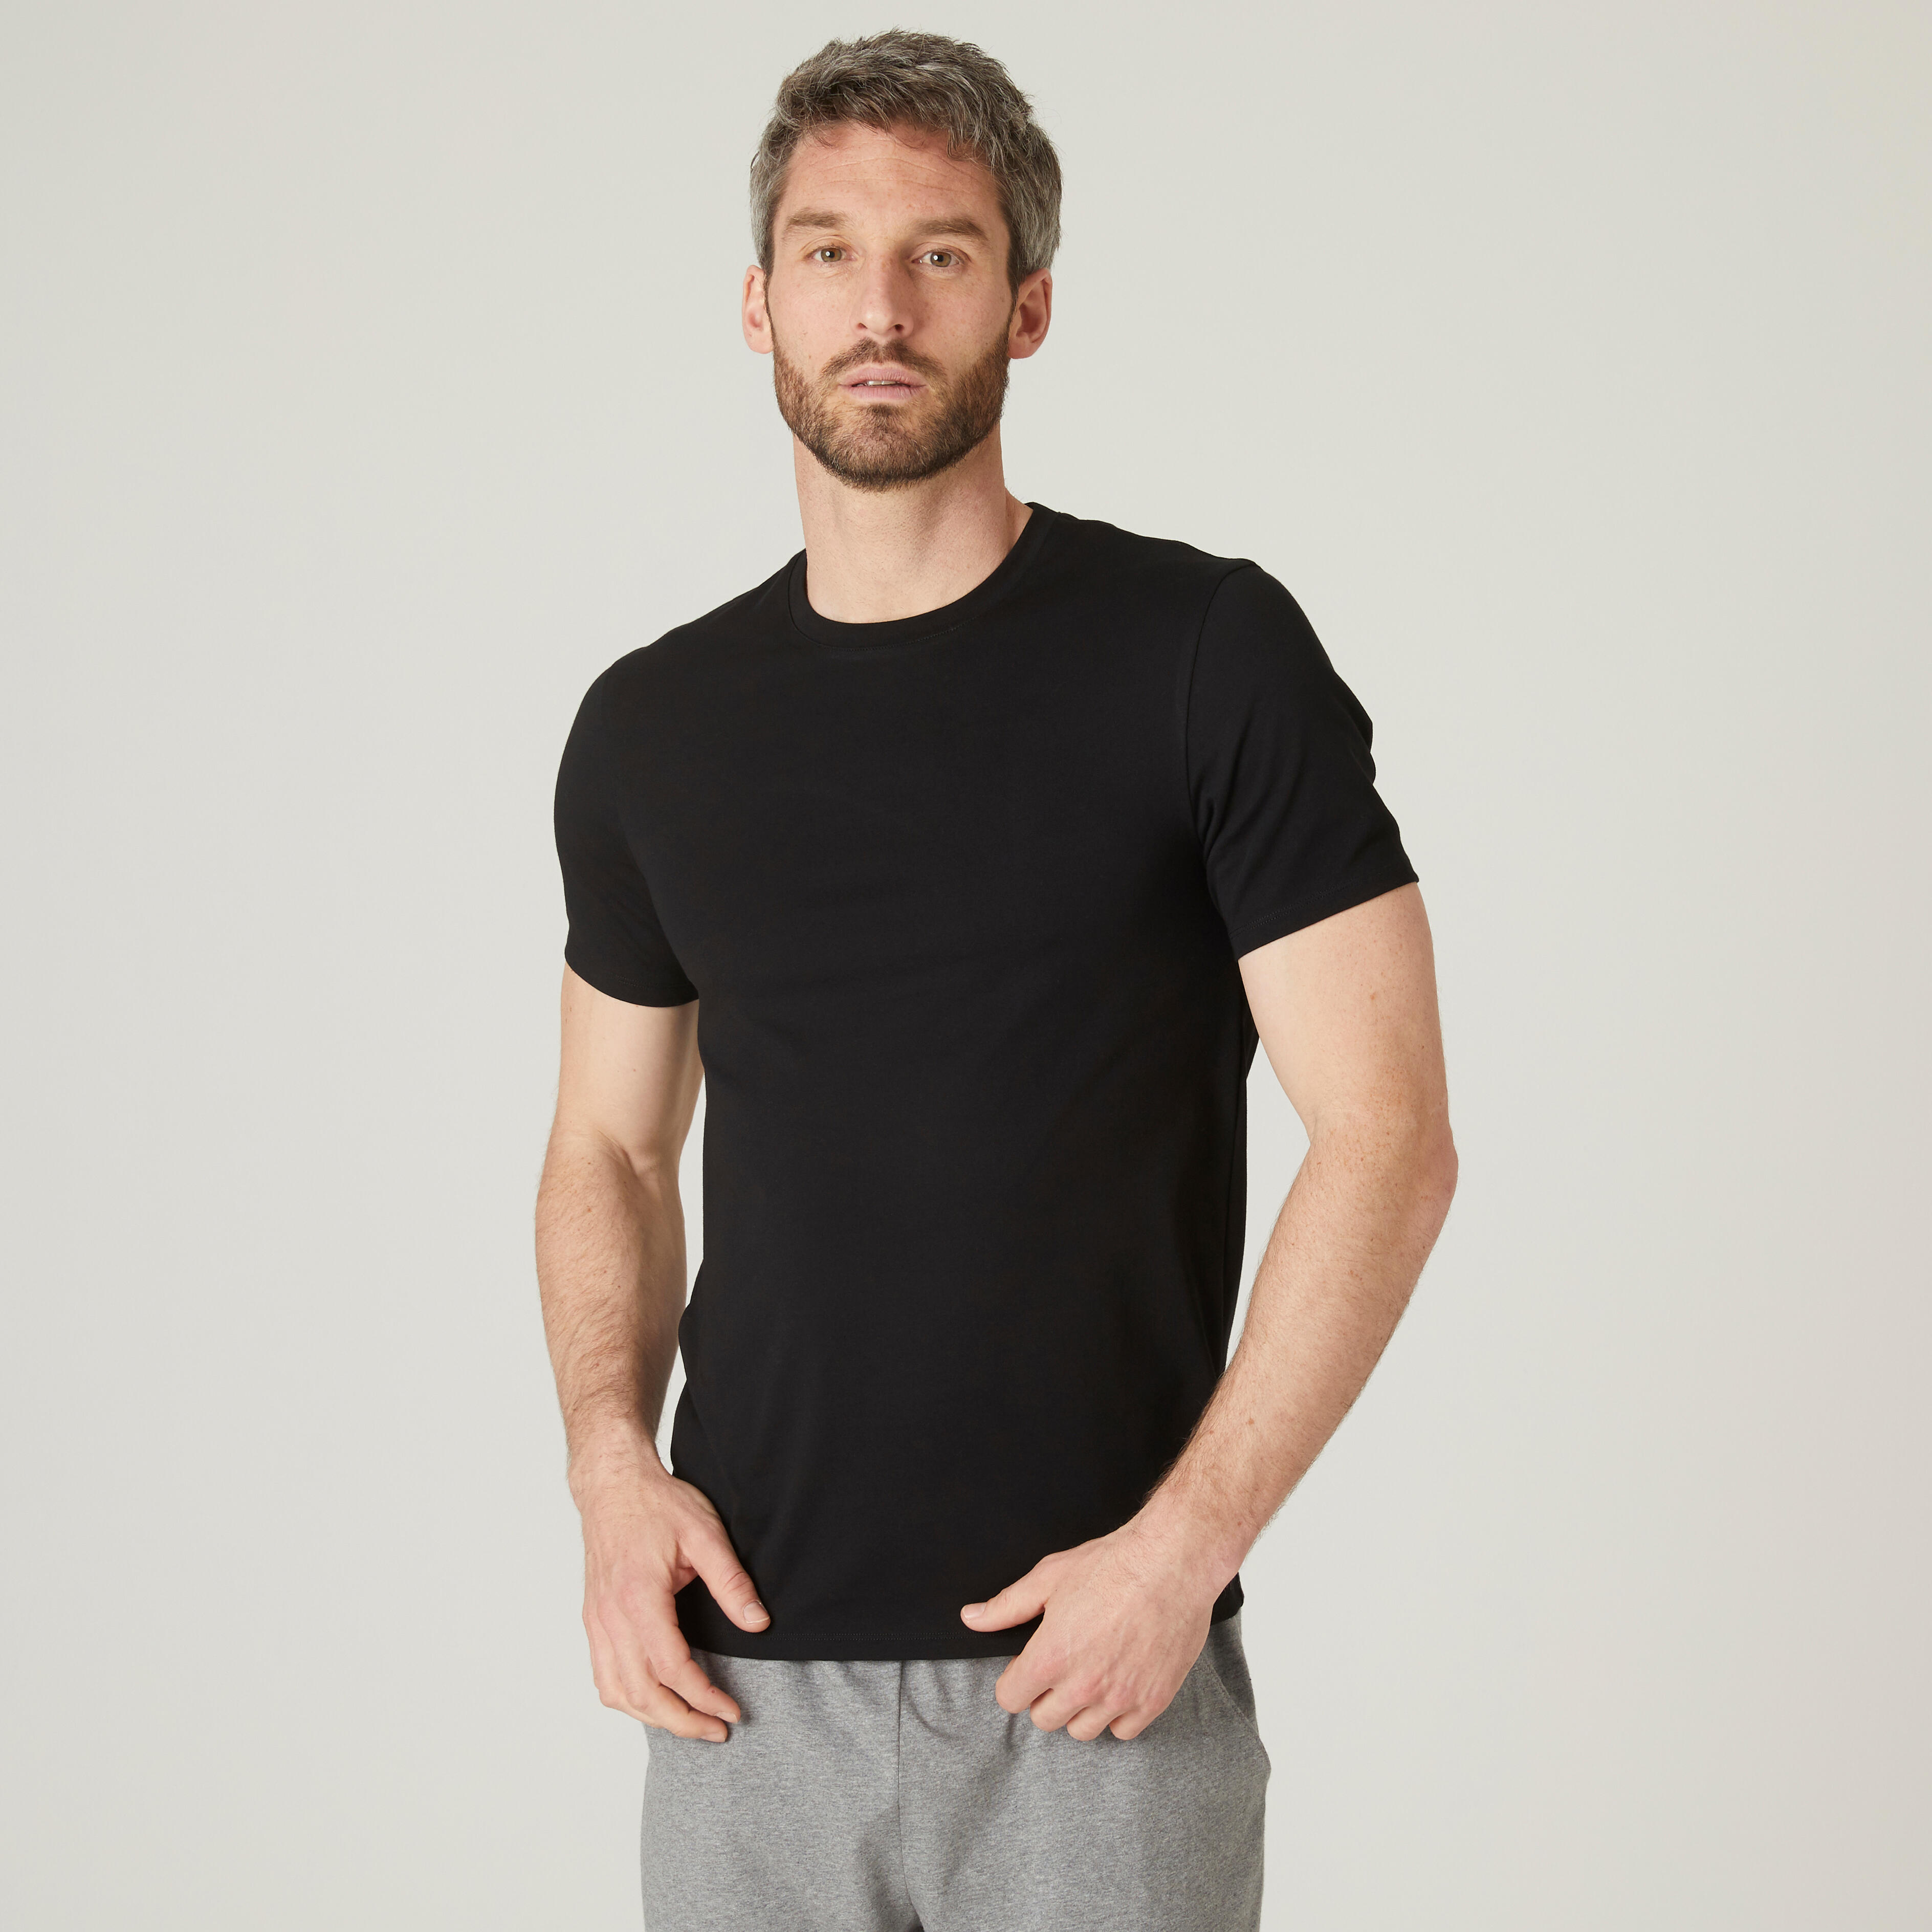 Men's Slim Fit Cotton Fitness T-Shirt - Black